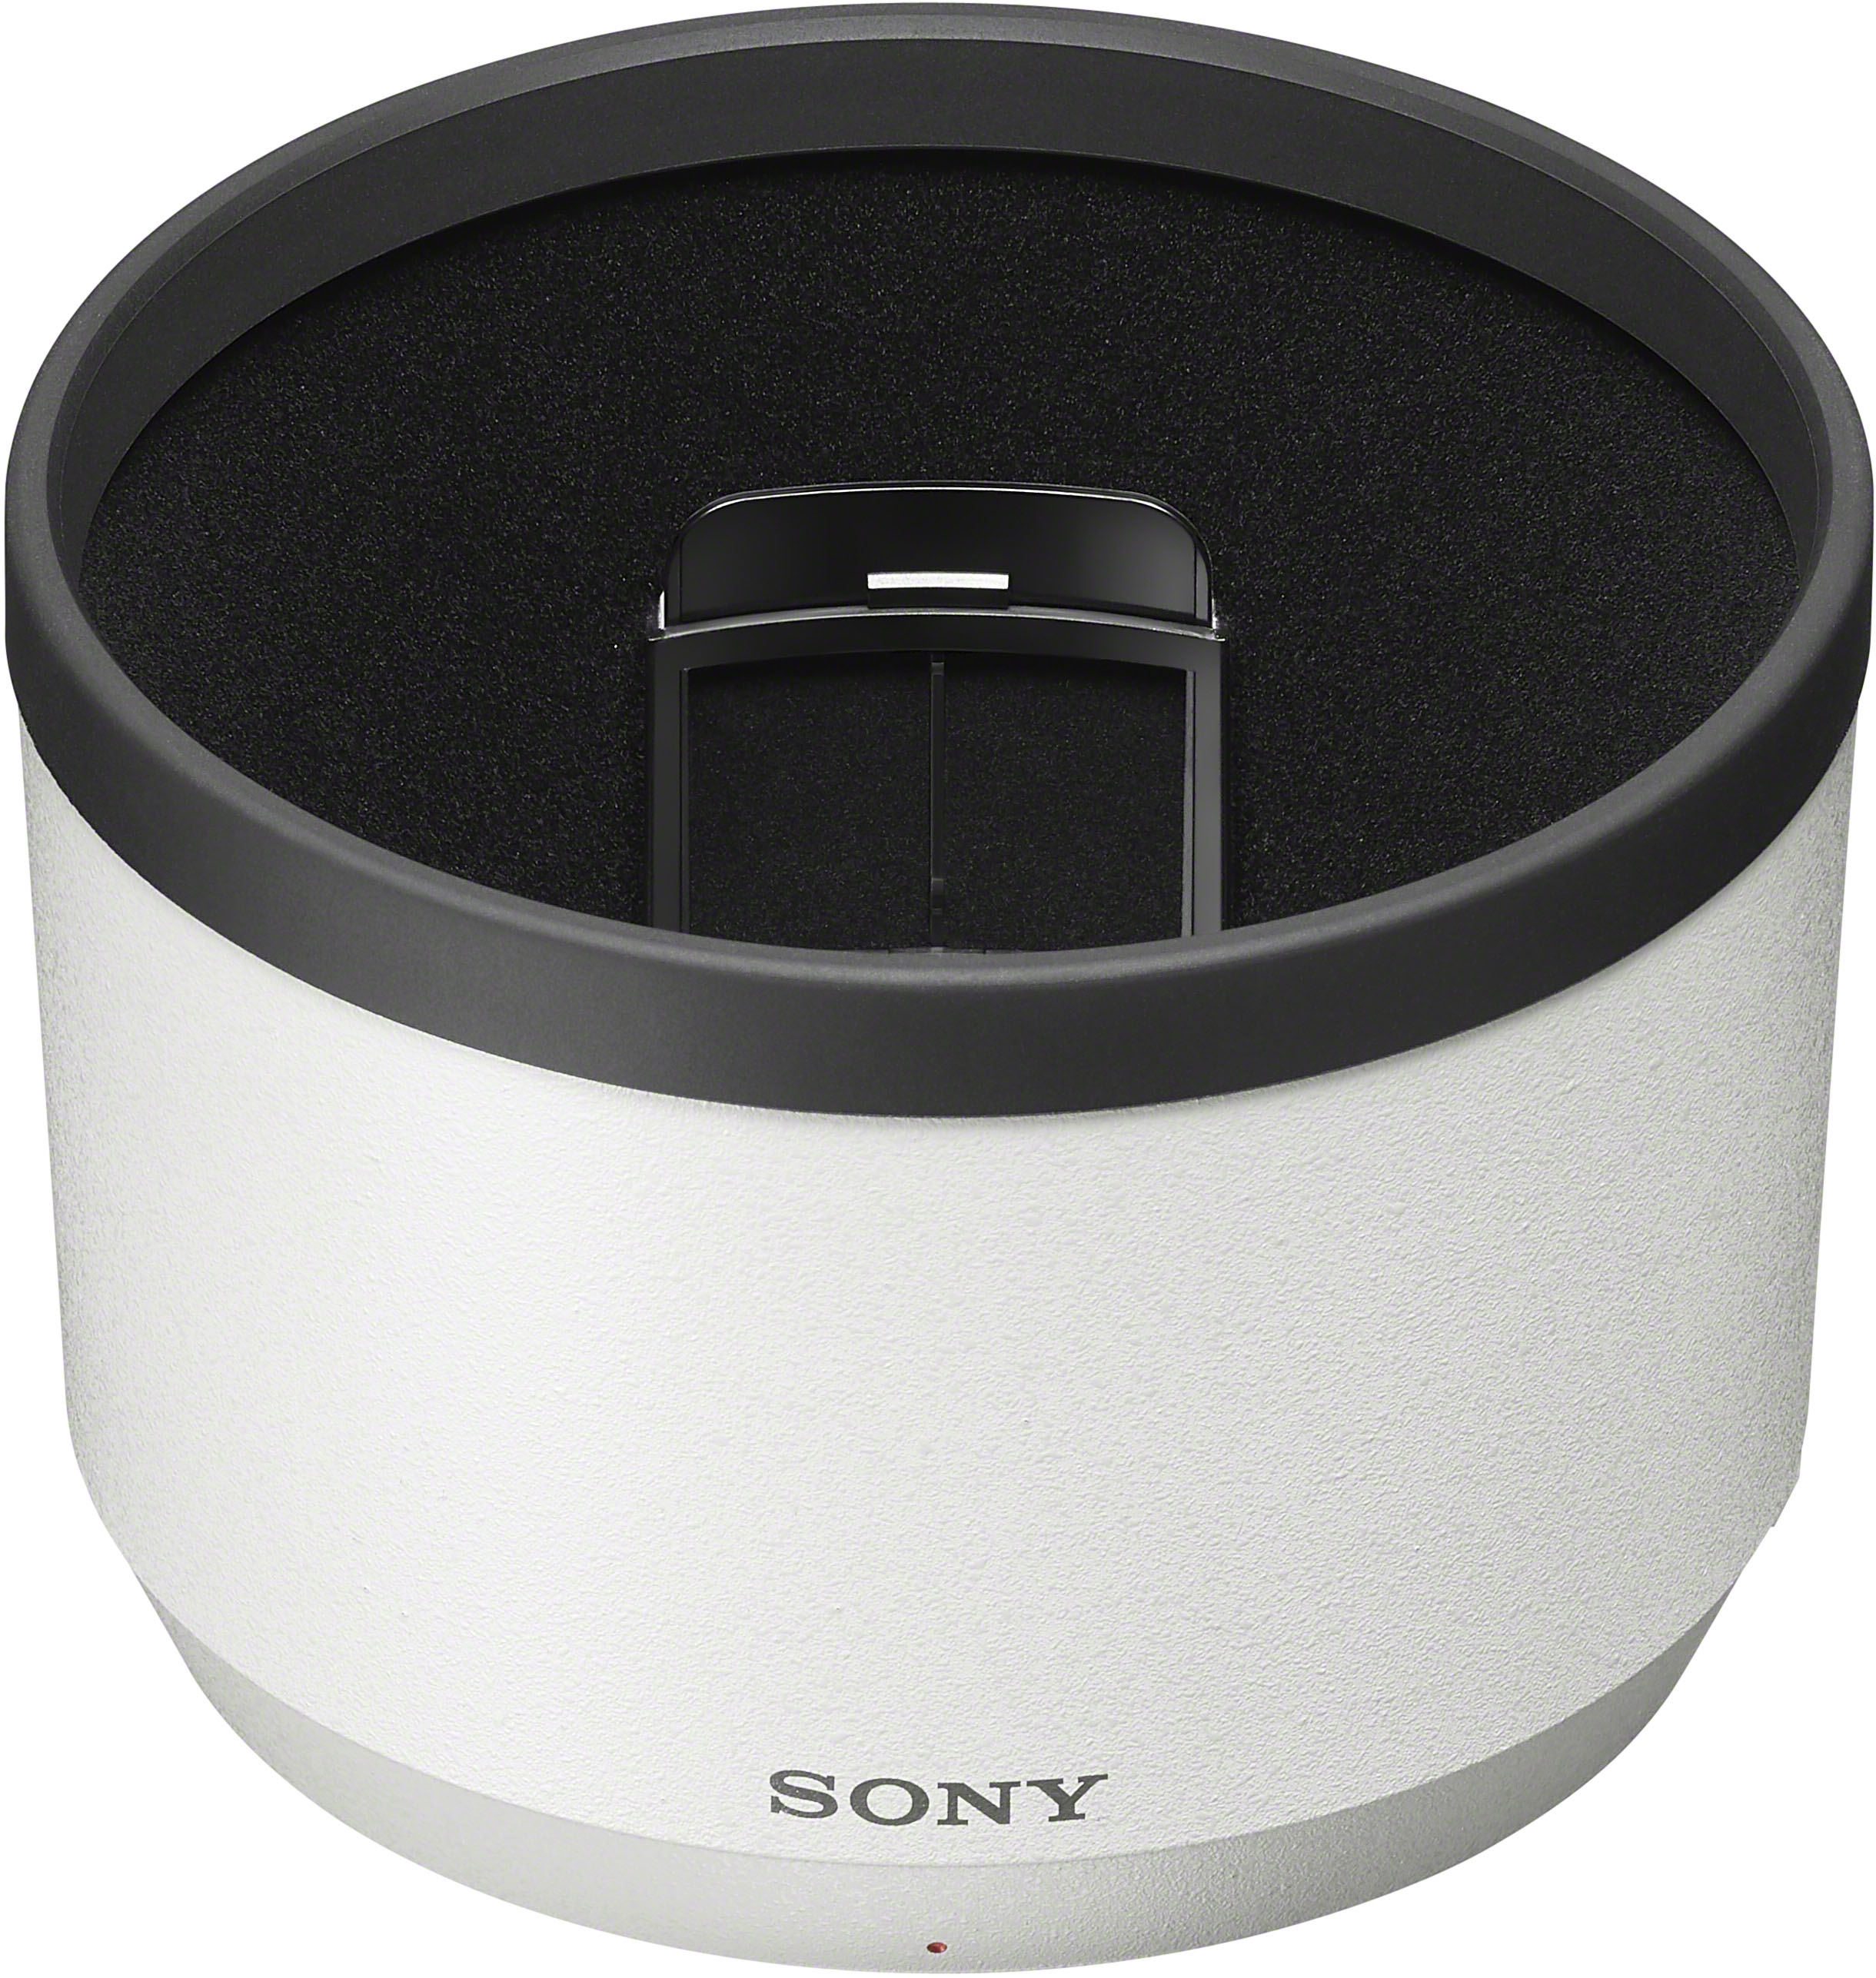 Sony FE 70-200mm F2.8 GM OSS II Full-Frame Constant-Aperture telephoto Zoom  G